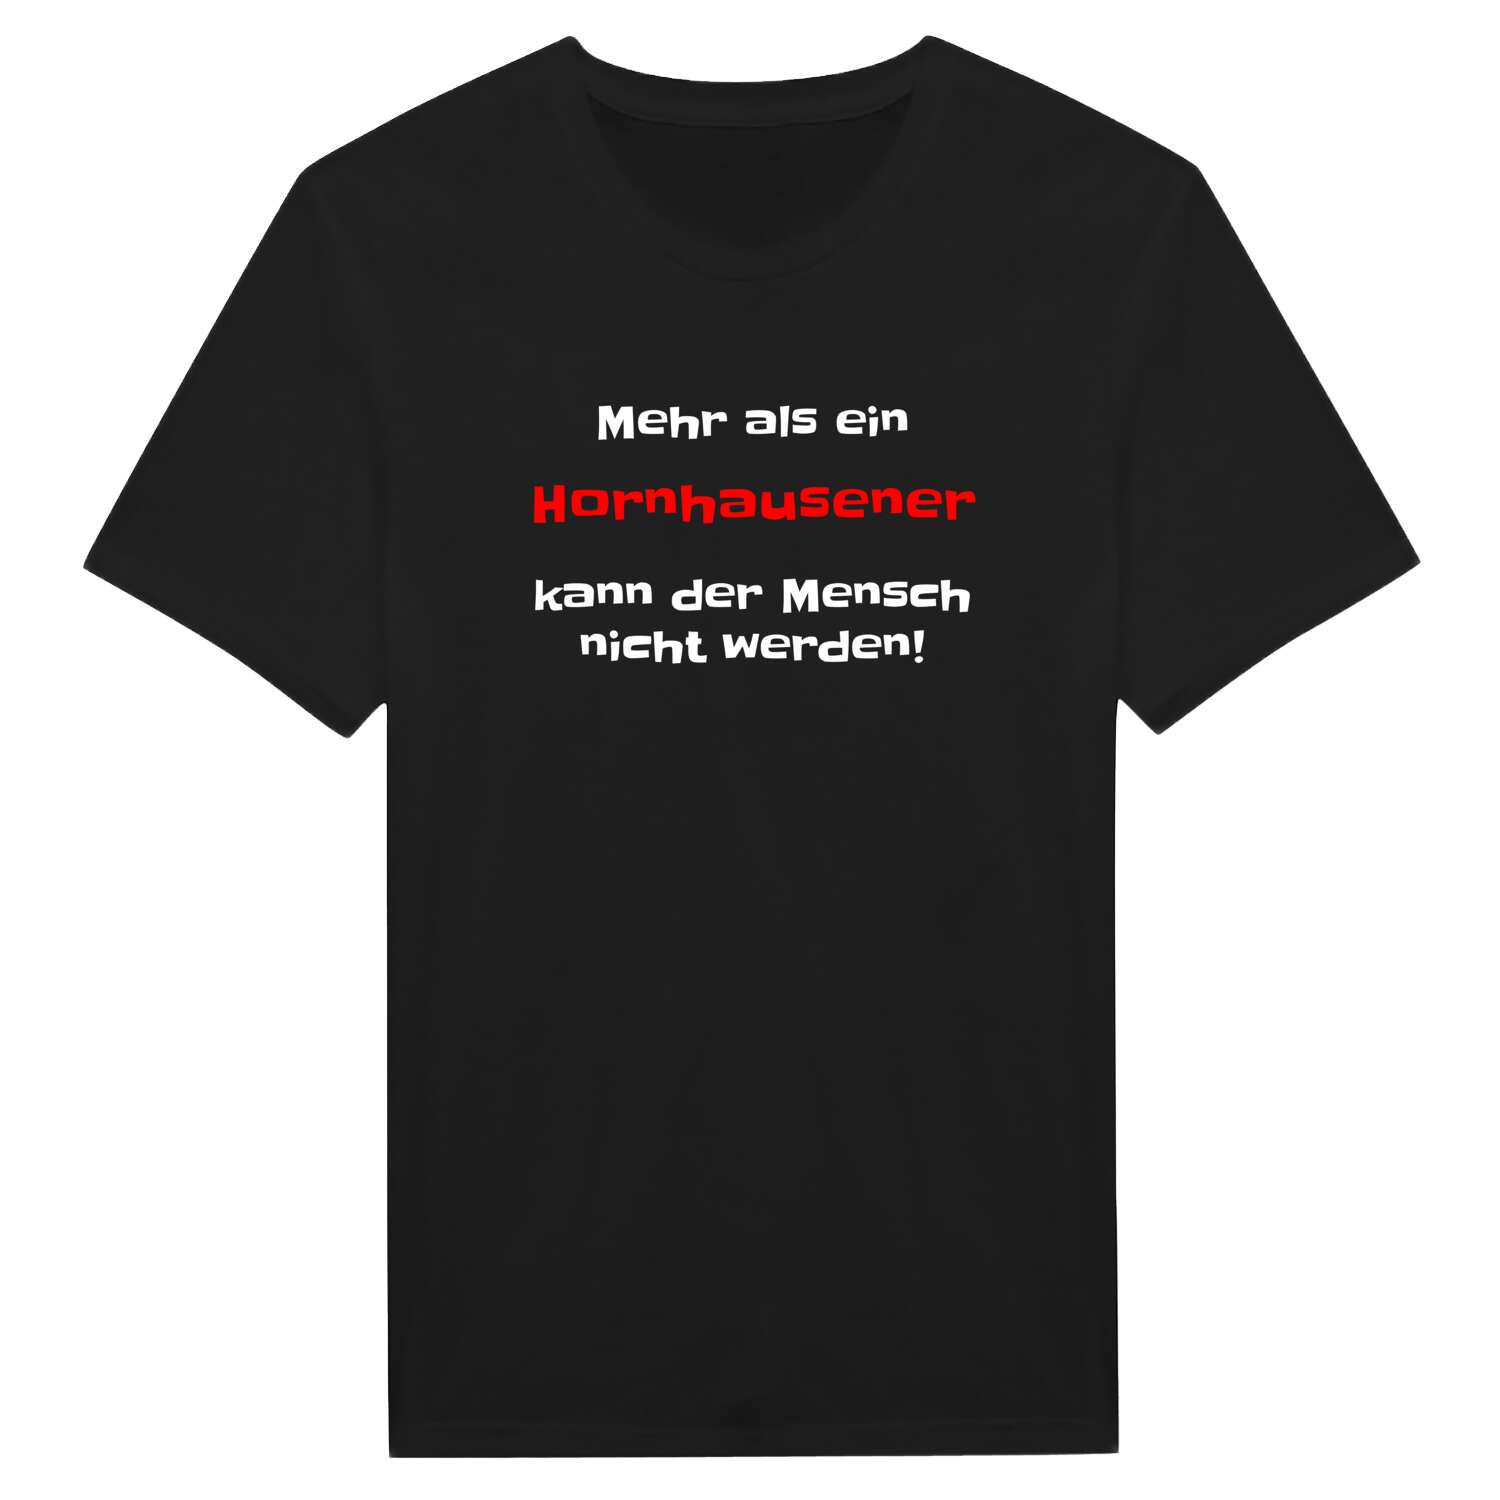 Hornhausen T-Shirt »Mehr als ein«